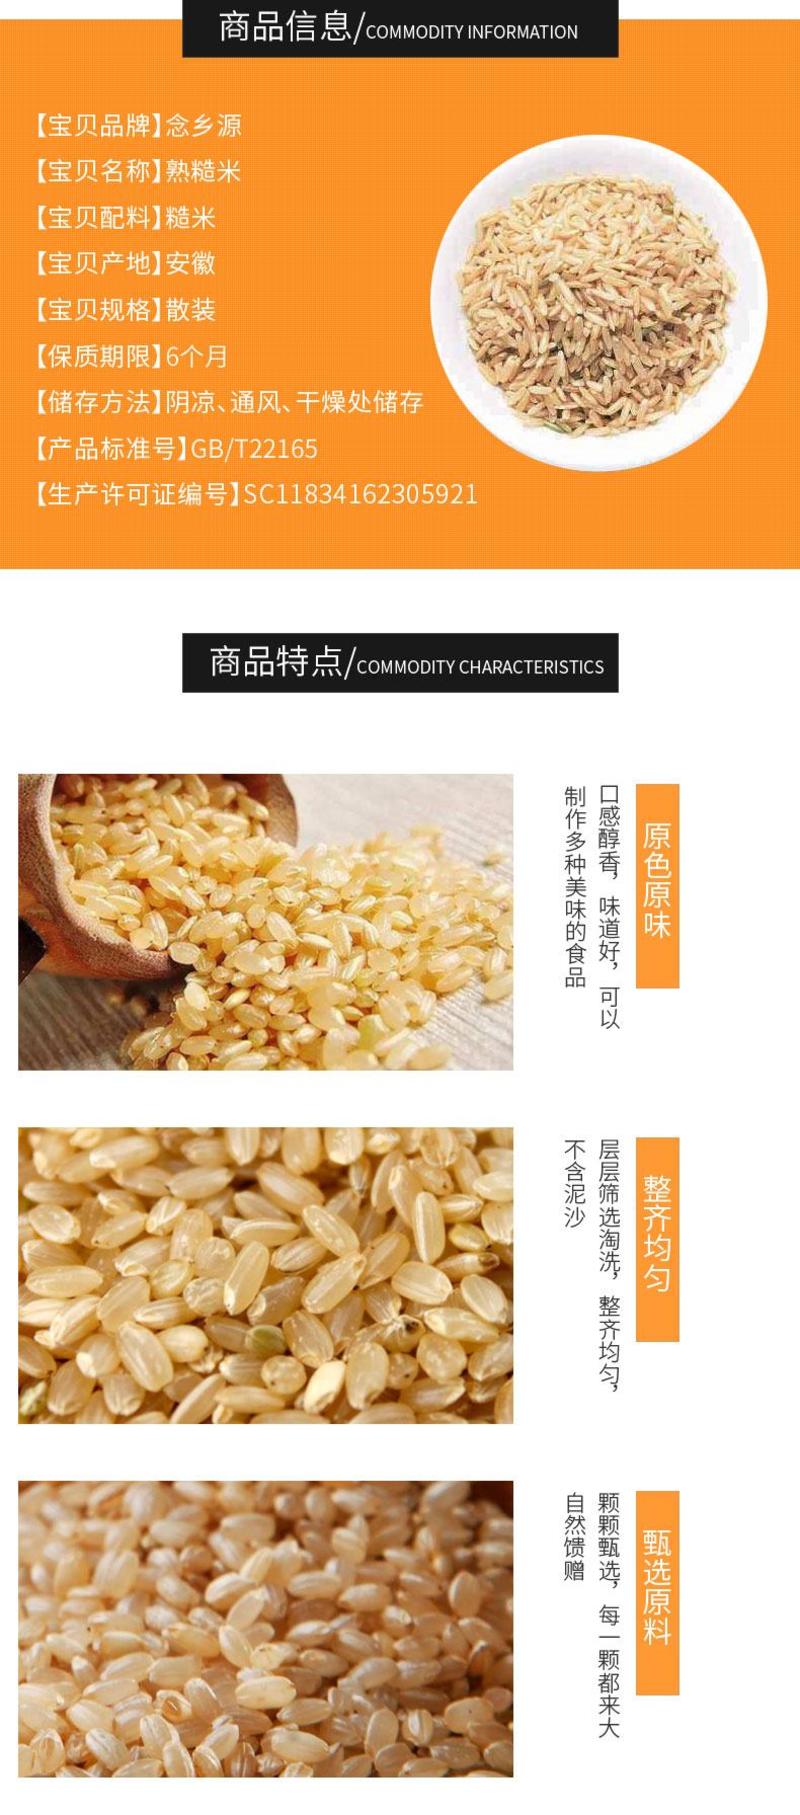 熟糙米糙米低温烘焙五谷杂粮磨坊粉豆浆粉原料批发